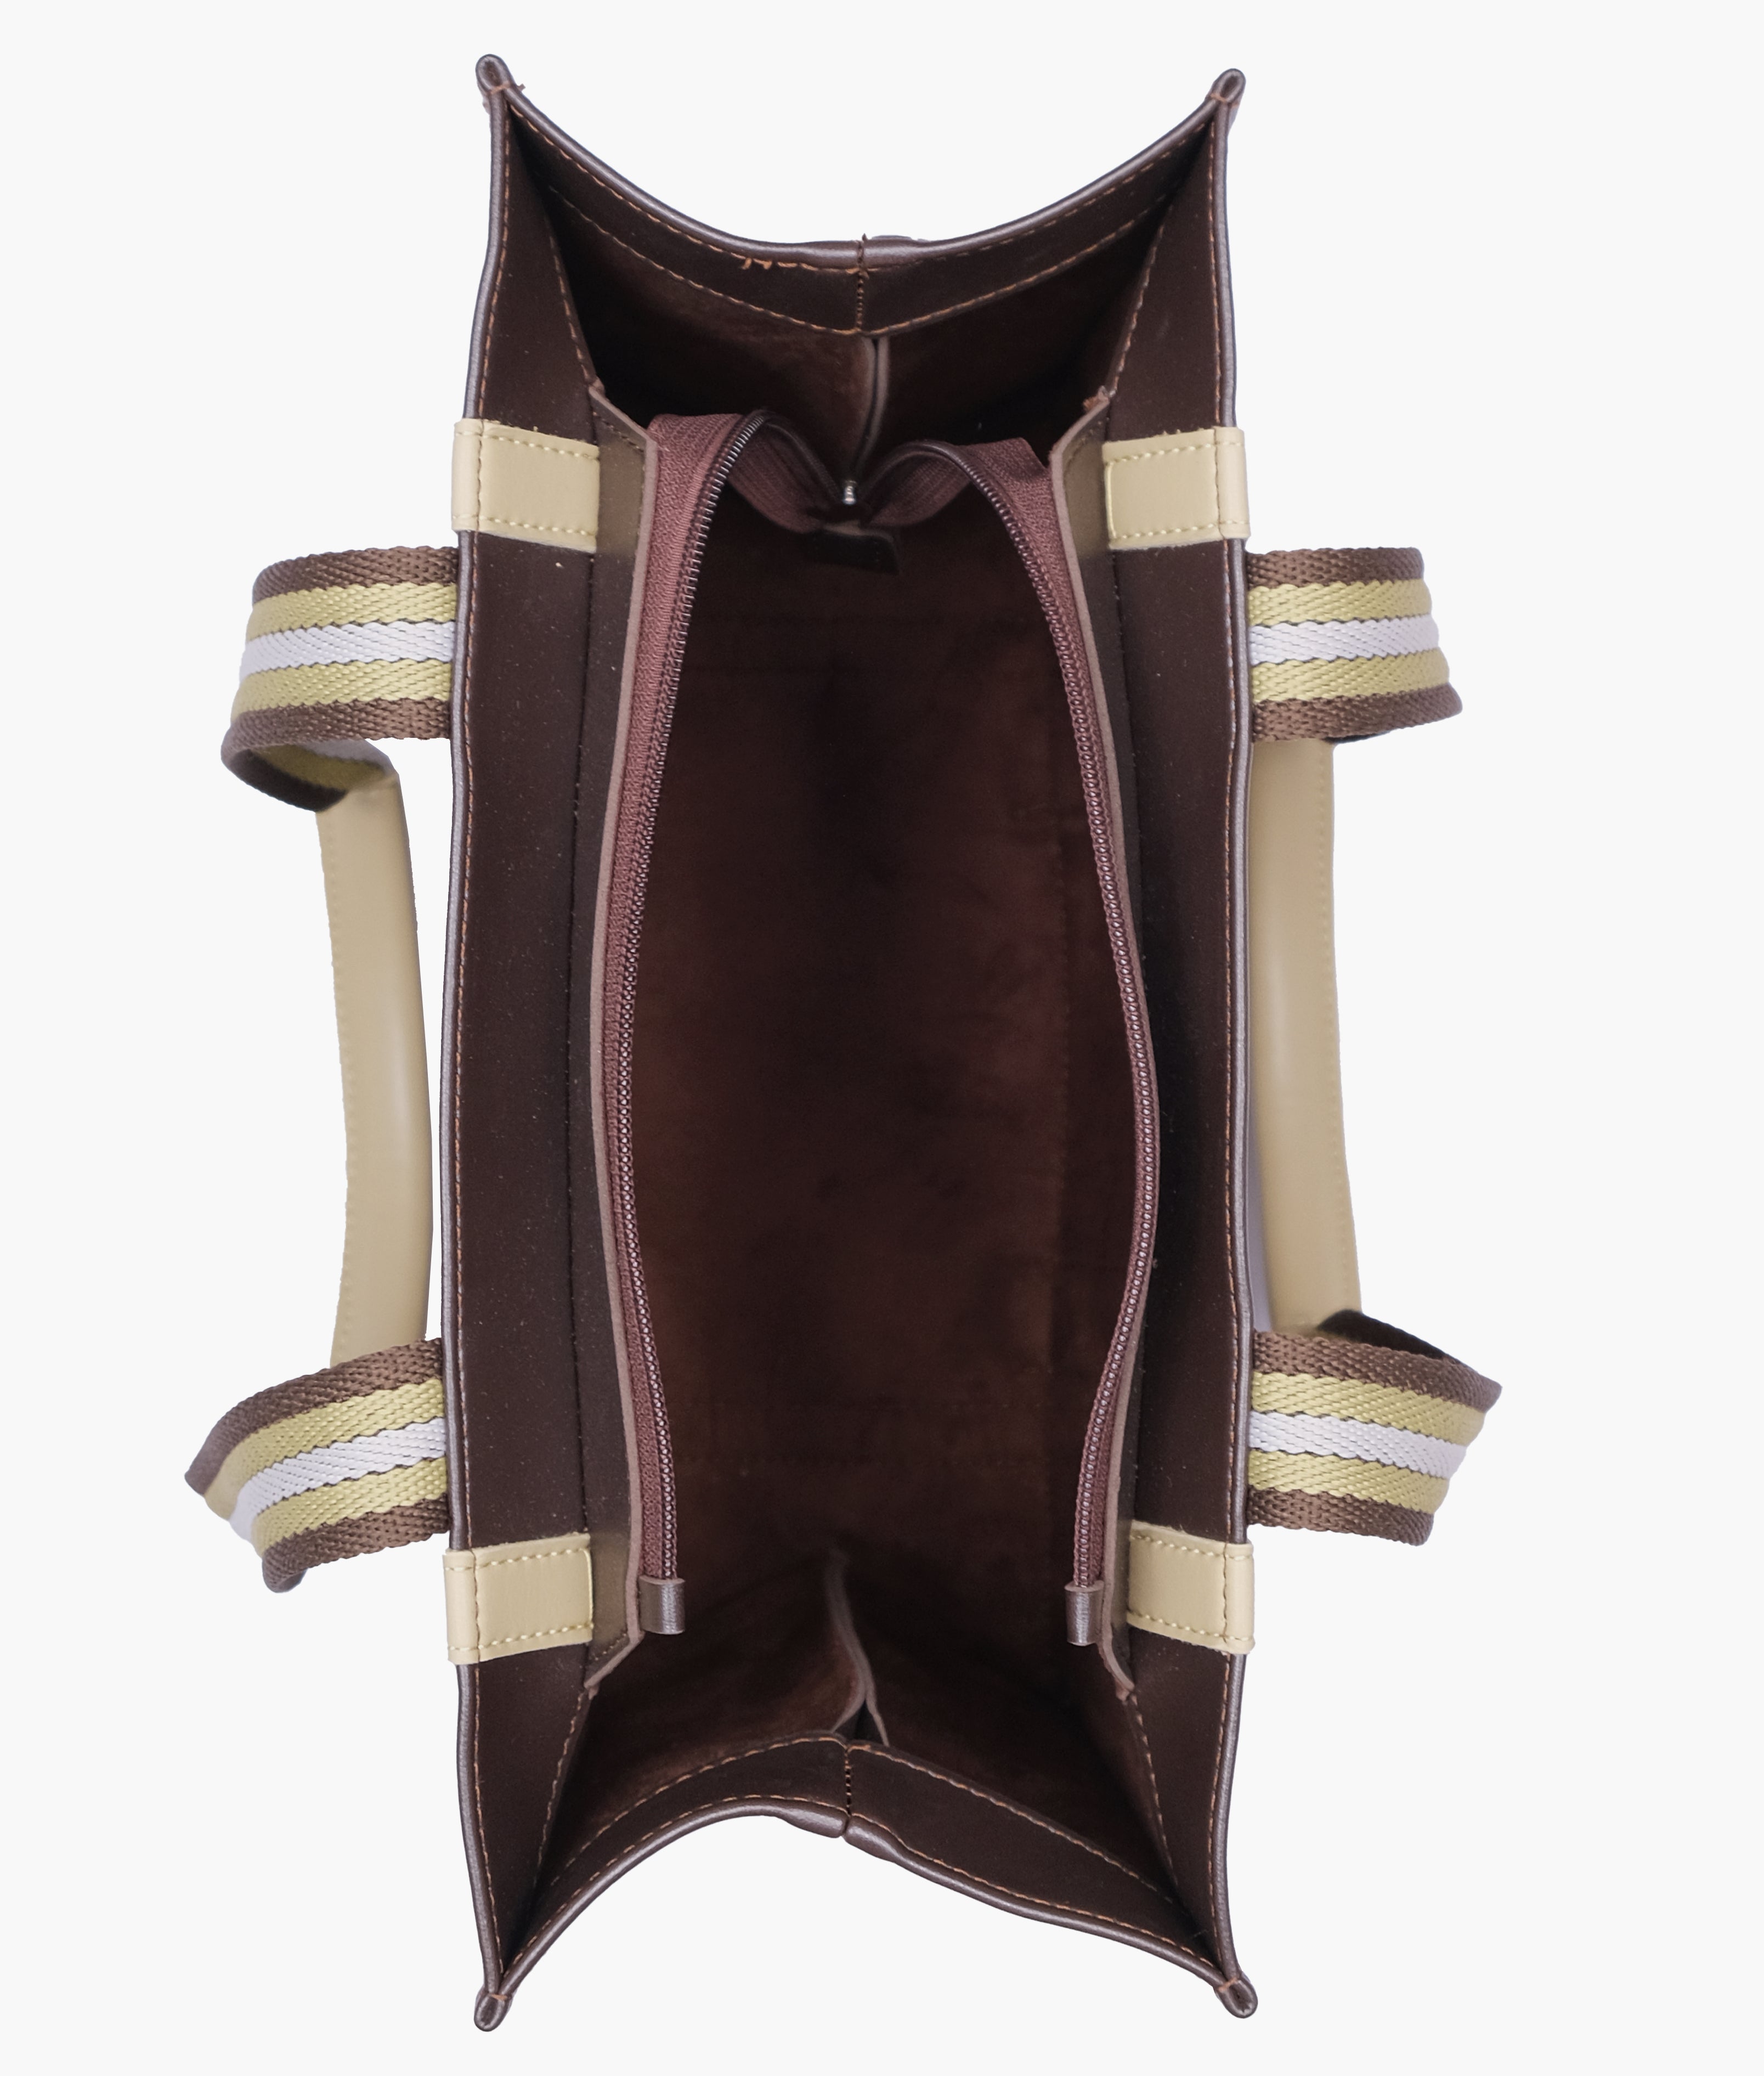 Dark brown long strap tote bag